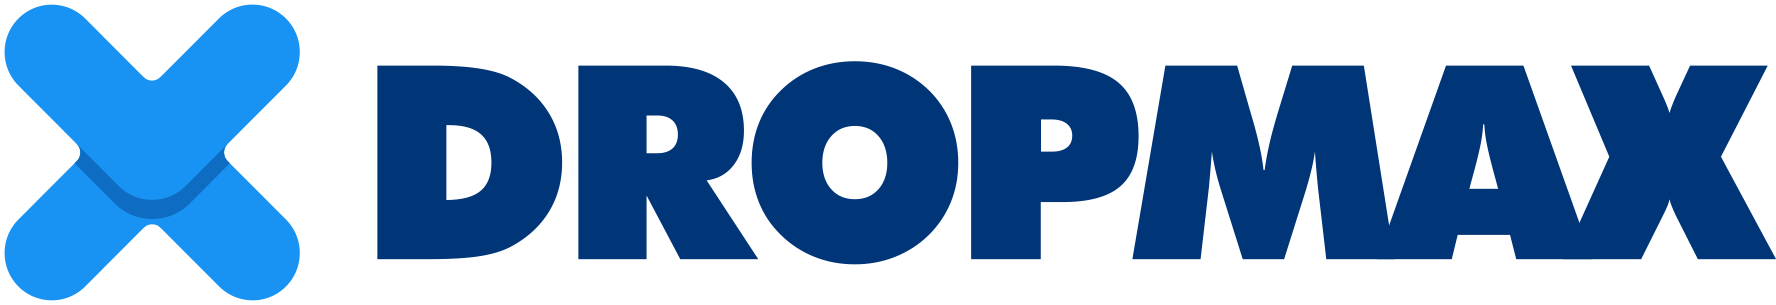 Dropmax logo